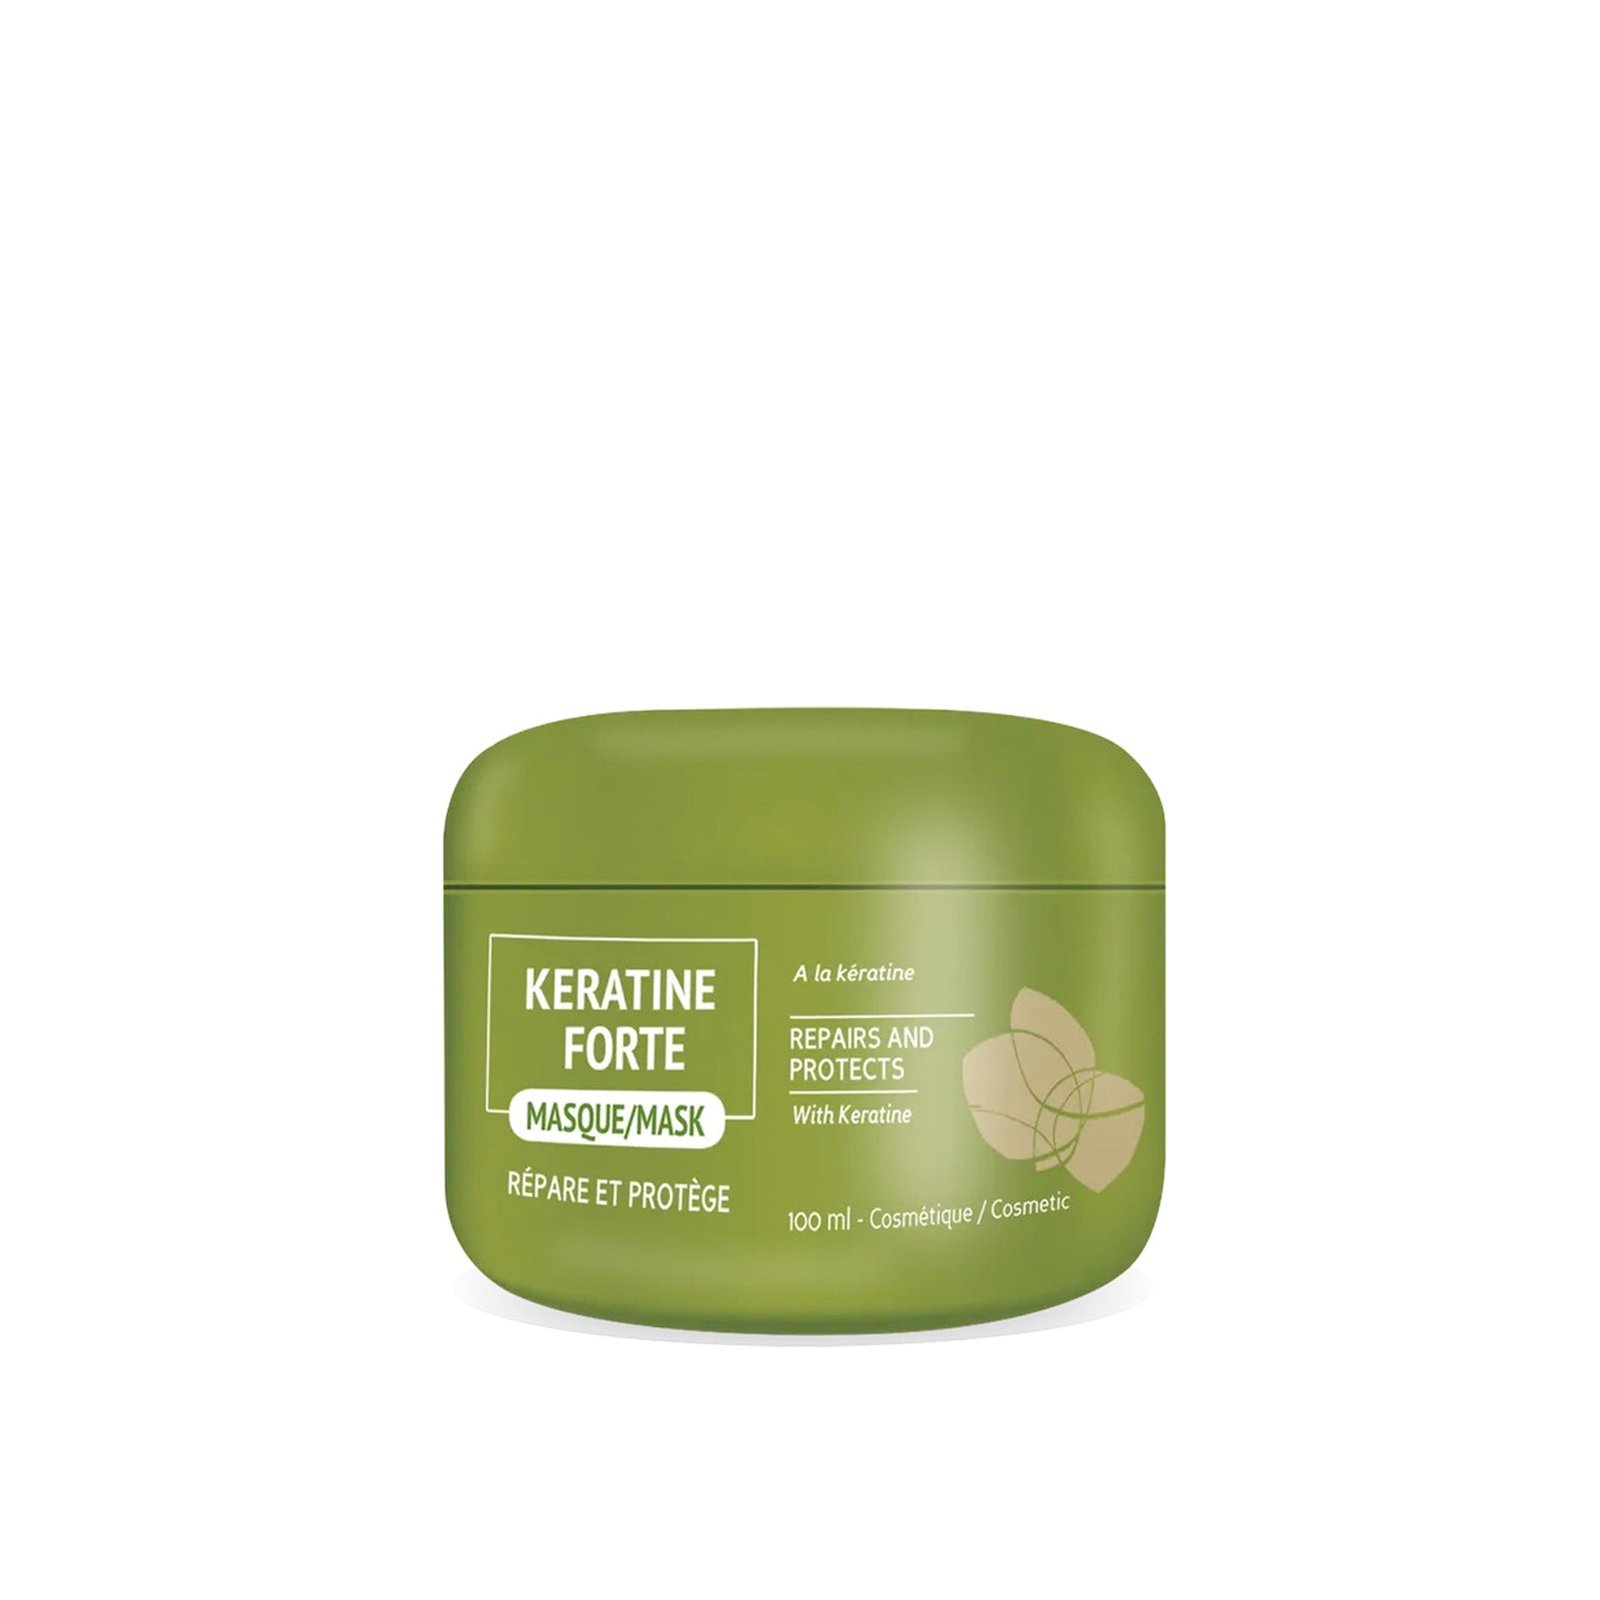 Biocyte Keratine Forte Hair Mask 100ml (3.38 fl oz)